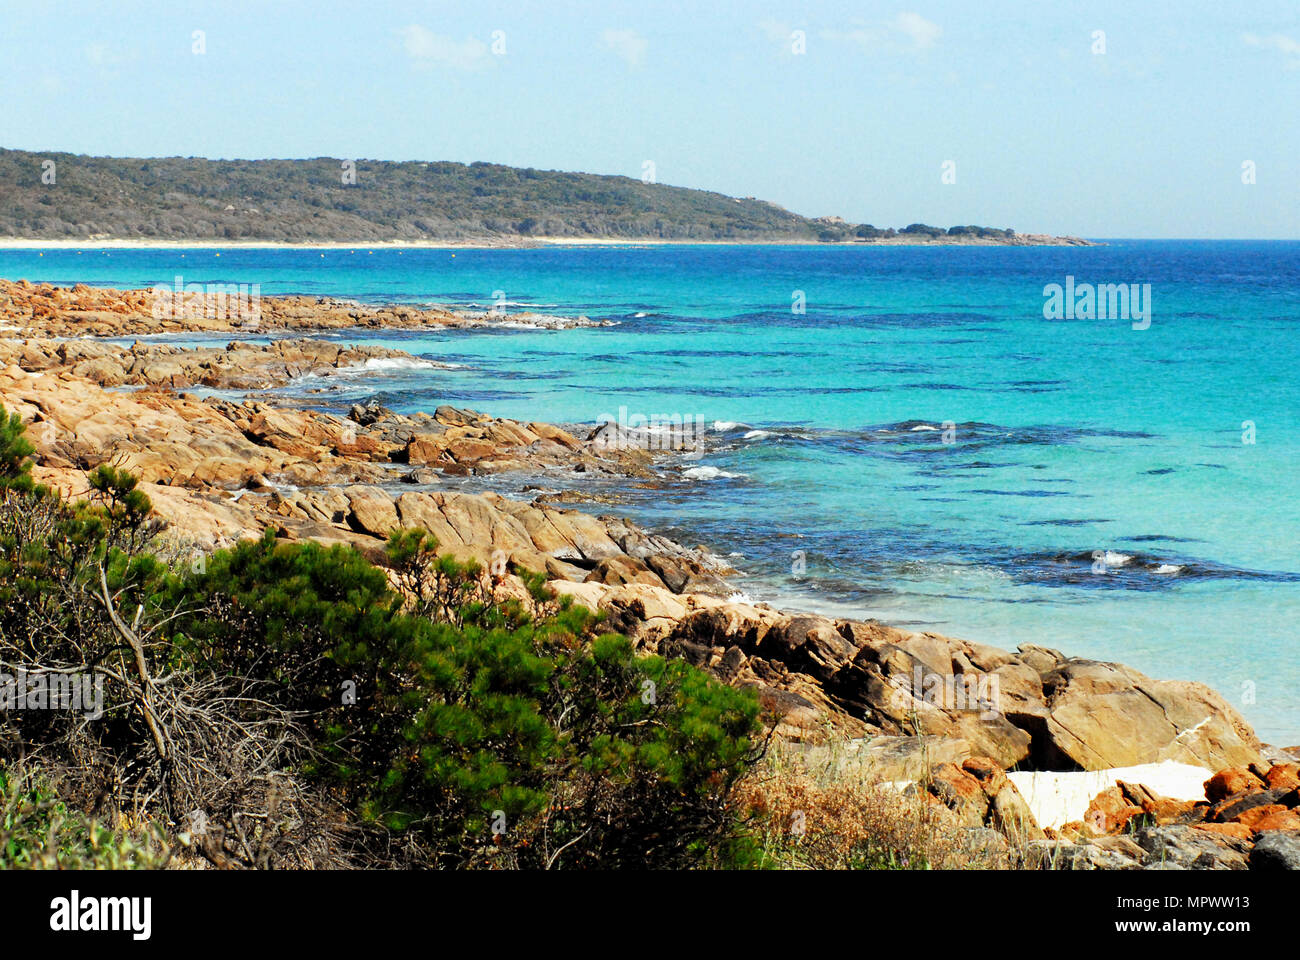 La poco conosciuta regione costiera a sud di Perth, l'Australia ha meravigliose coste selvagge. Foto Stock